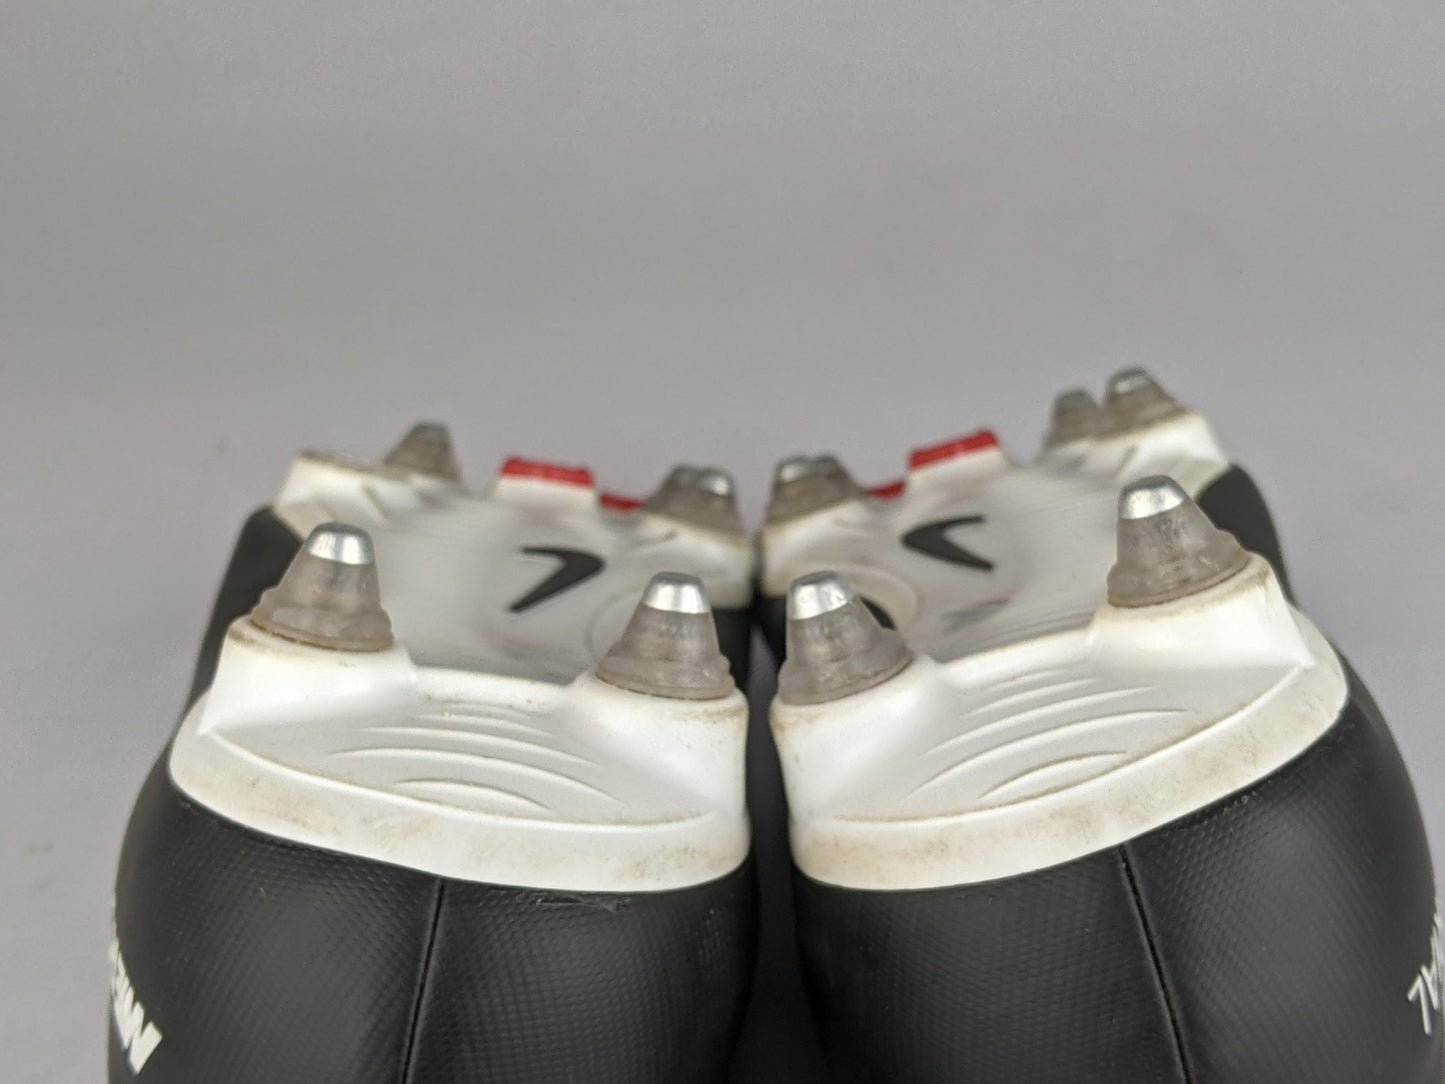 Nike Mercurial Victory VI DF SG 'Black/White' 903610-002 (Missing Metal Tip)